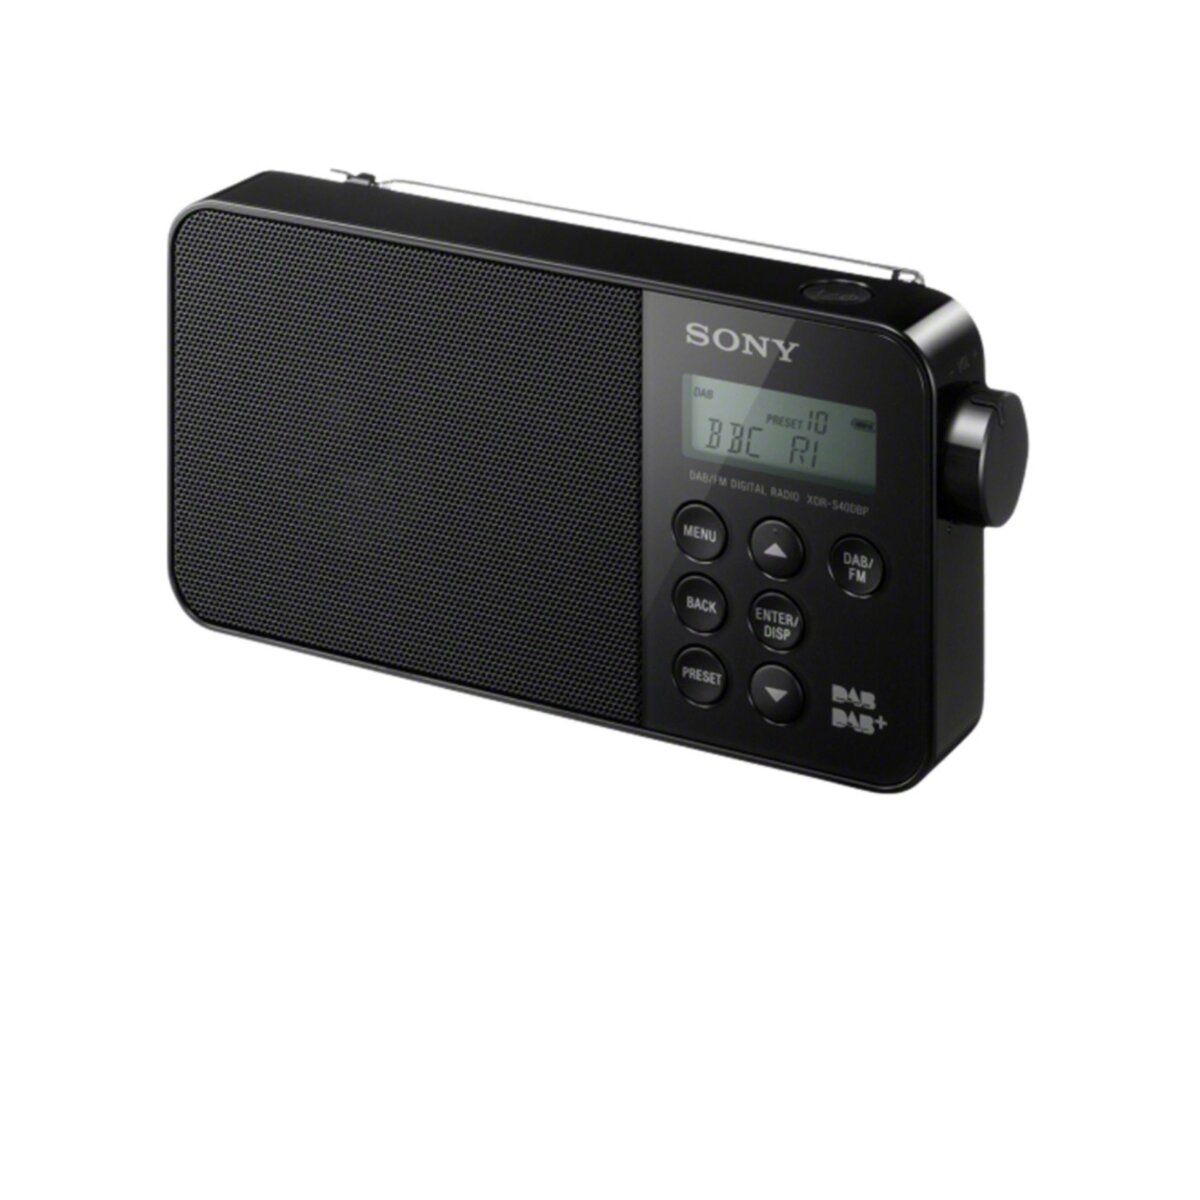 SONY Radio portable - Noir - XDR-S40DBP